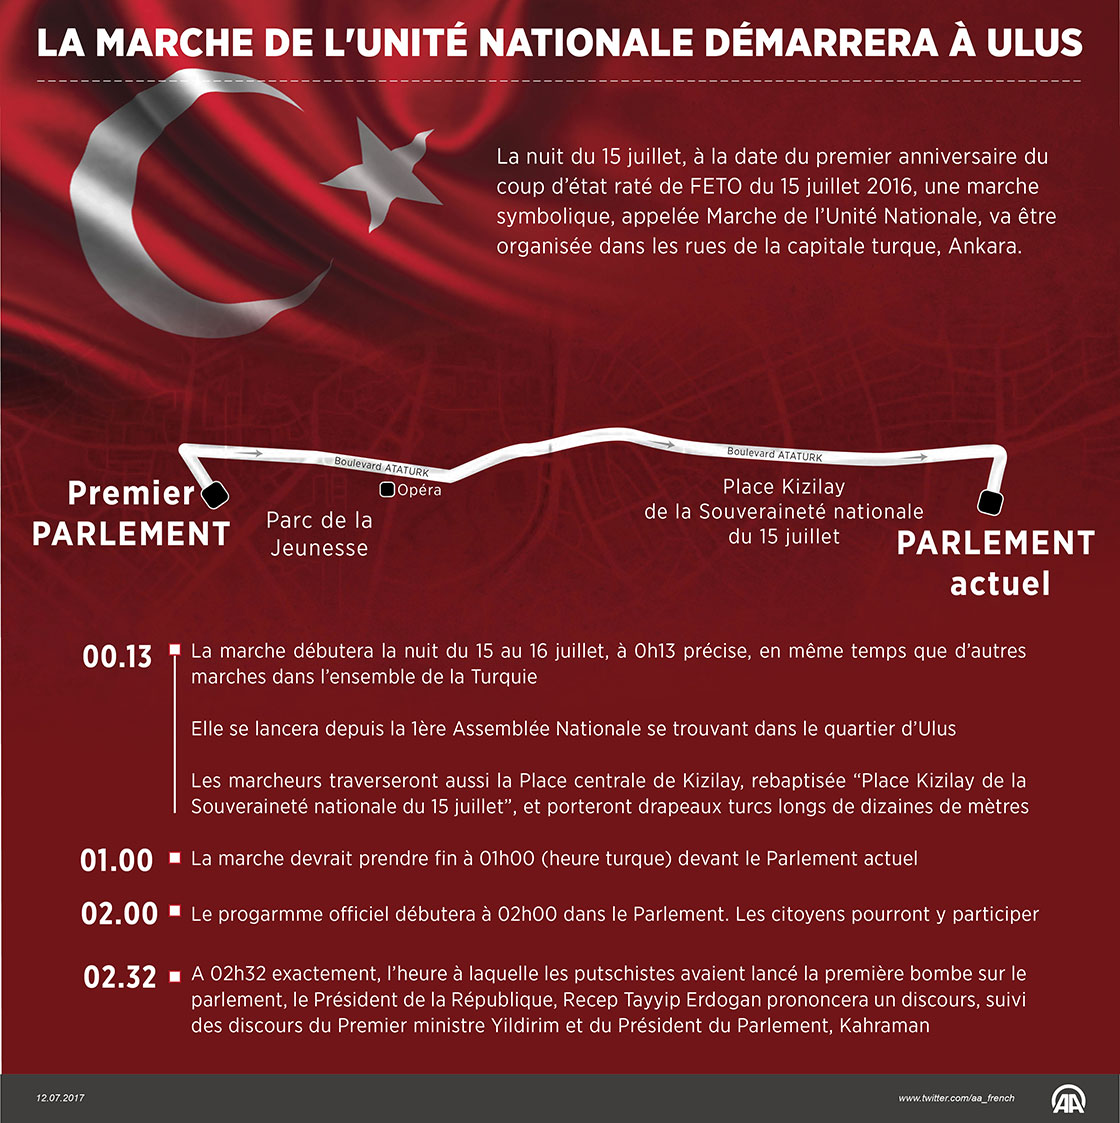 Anniversaire du 15 juillet: La Marche de l'Unité Nationale démarrera à Ulus